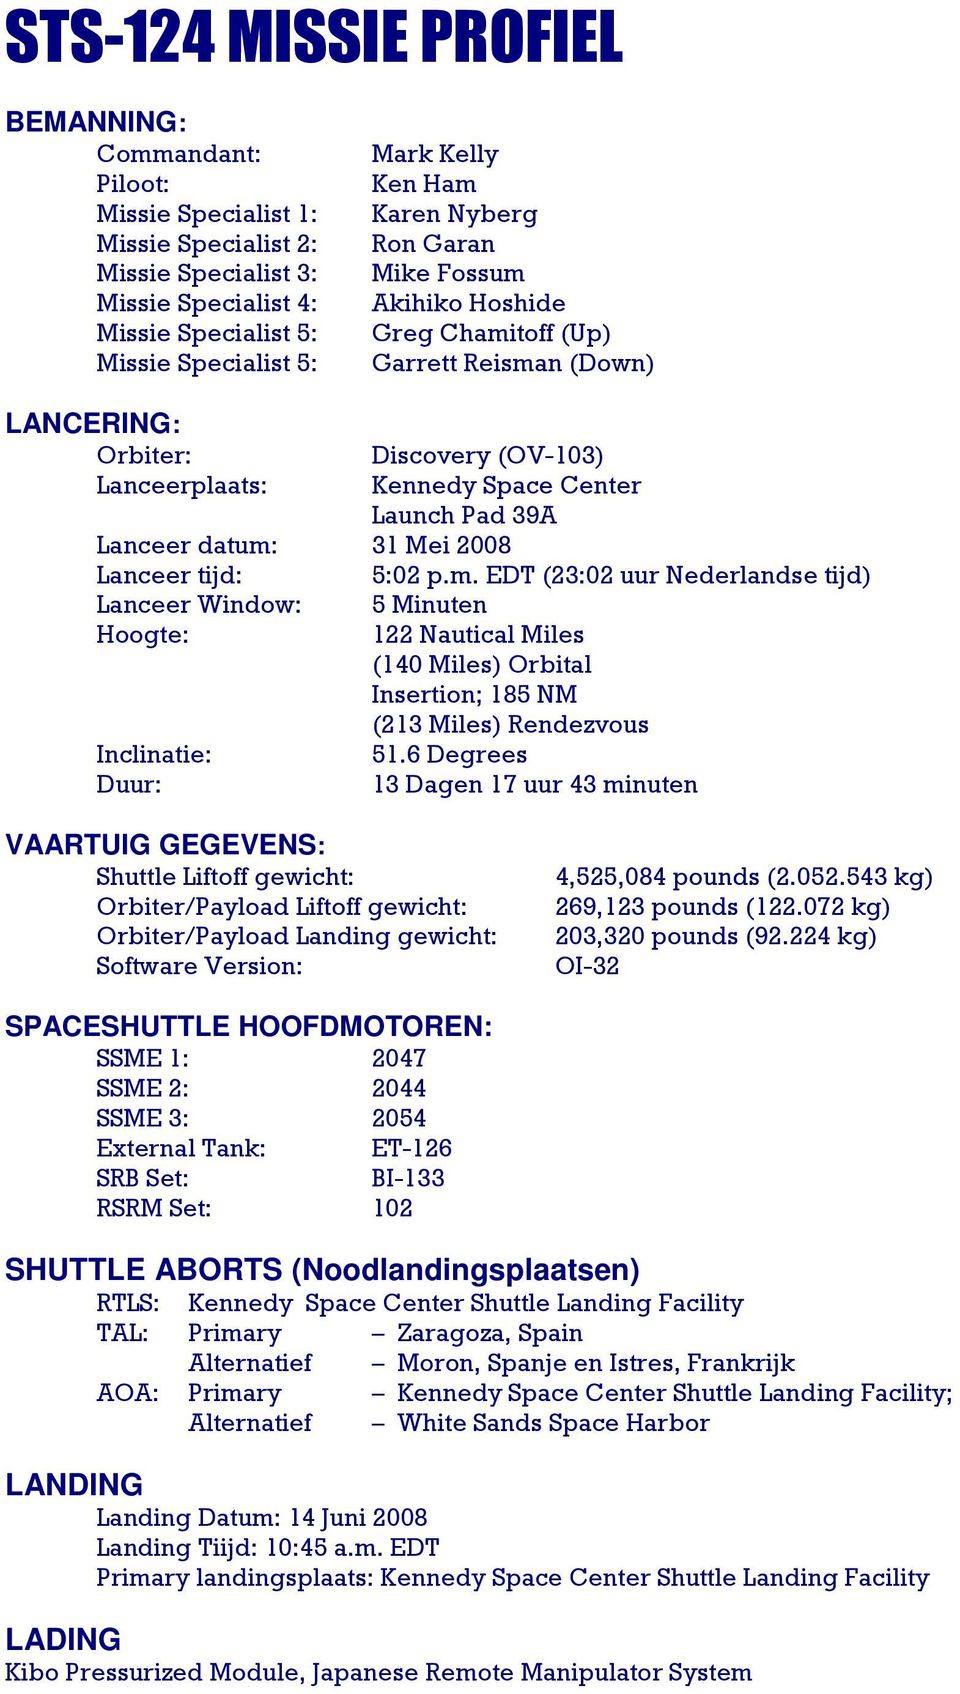 31 Mei 2008 Lanceer tijd: 5:02 p.m. EDT (23:02 uur Nederlandse tijd) Lanceer Window: 5 Minuten Hoogte: 122 Nautical Miles (140 Miles) Orbital Insertion; 185 NM (213 Miles) Rendezvous Inclinatie: 51.